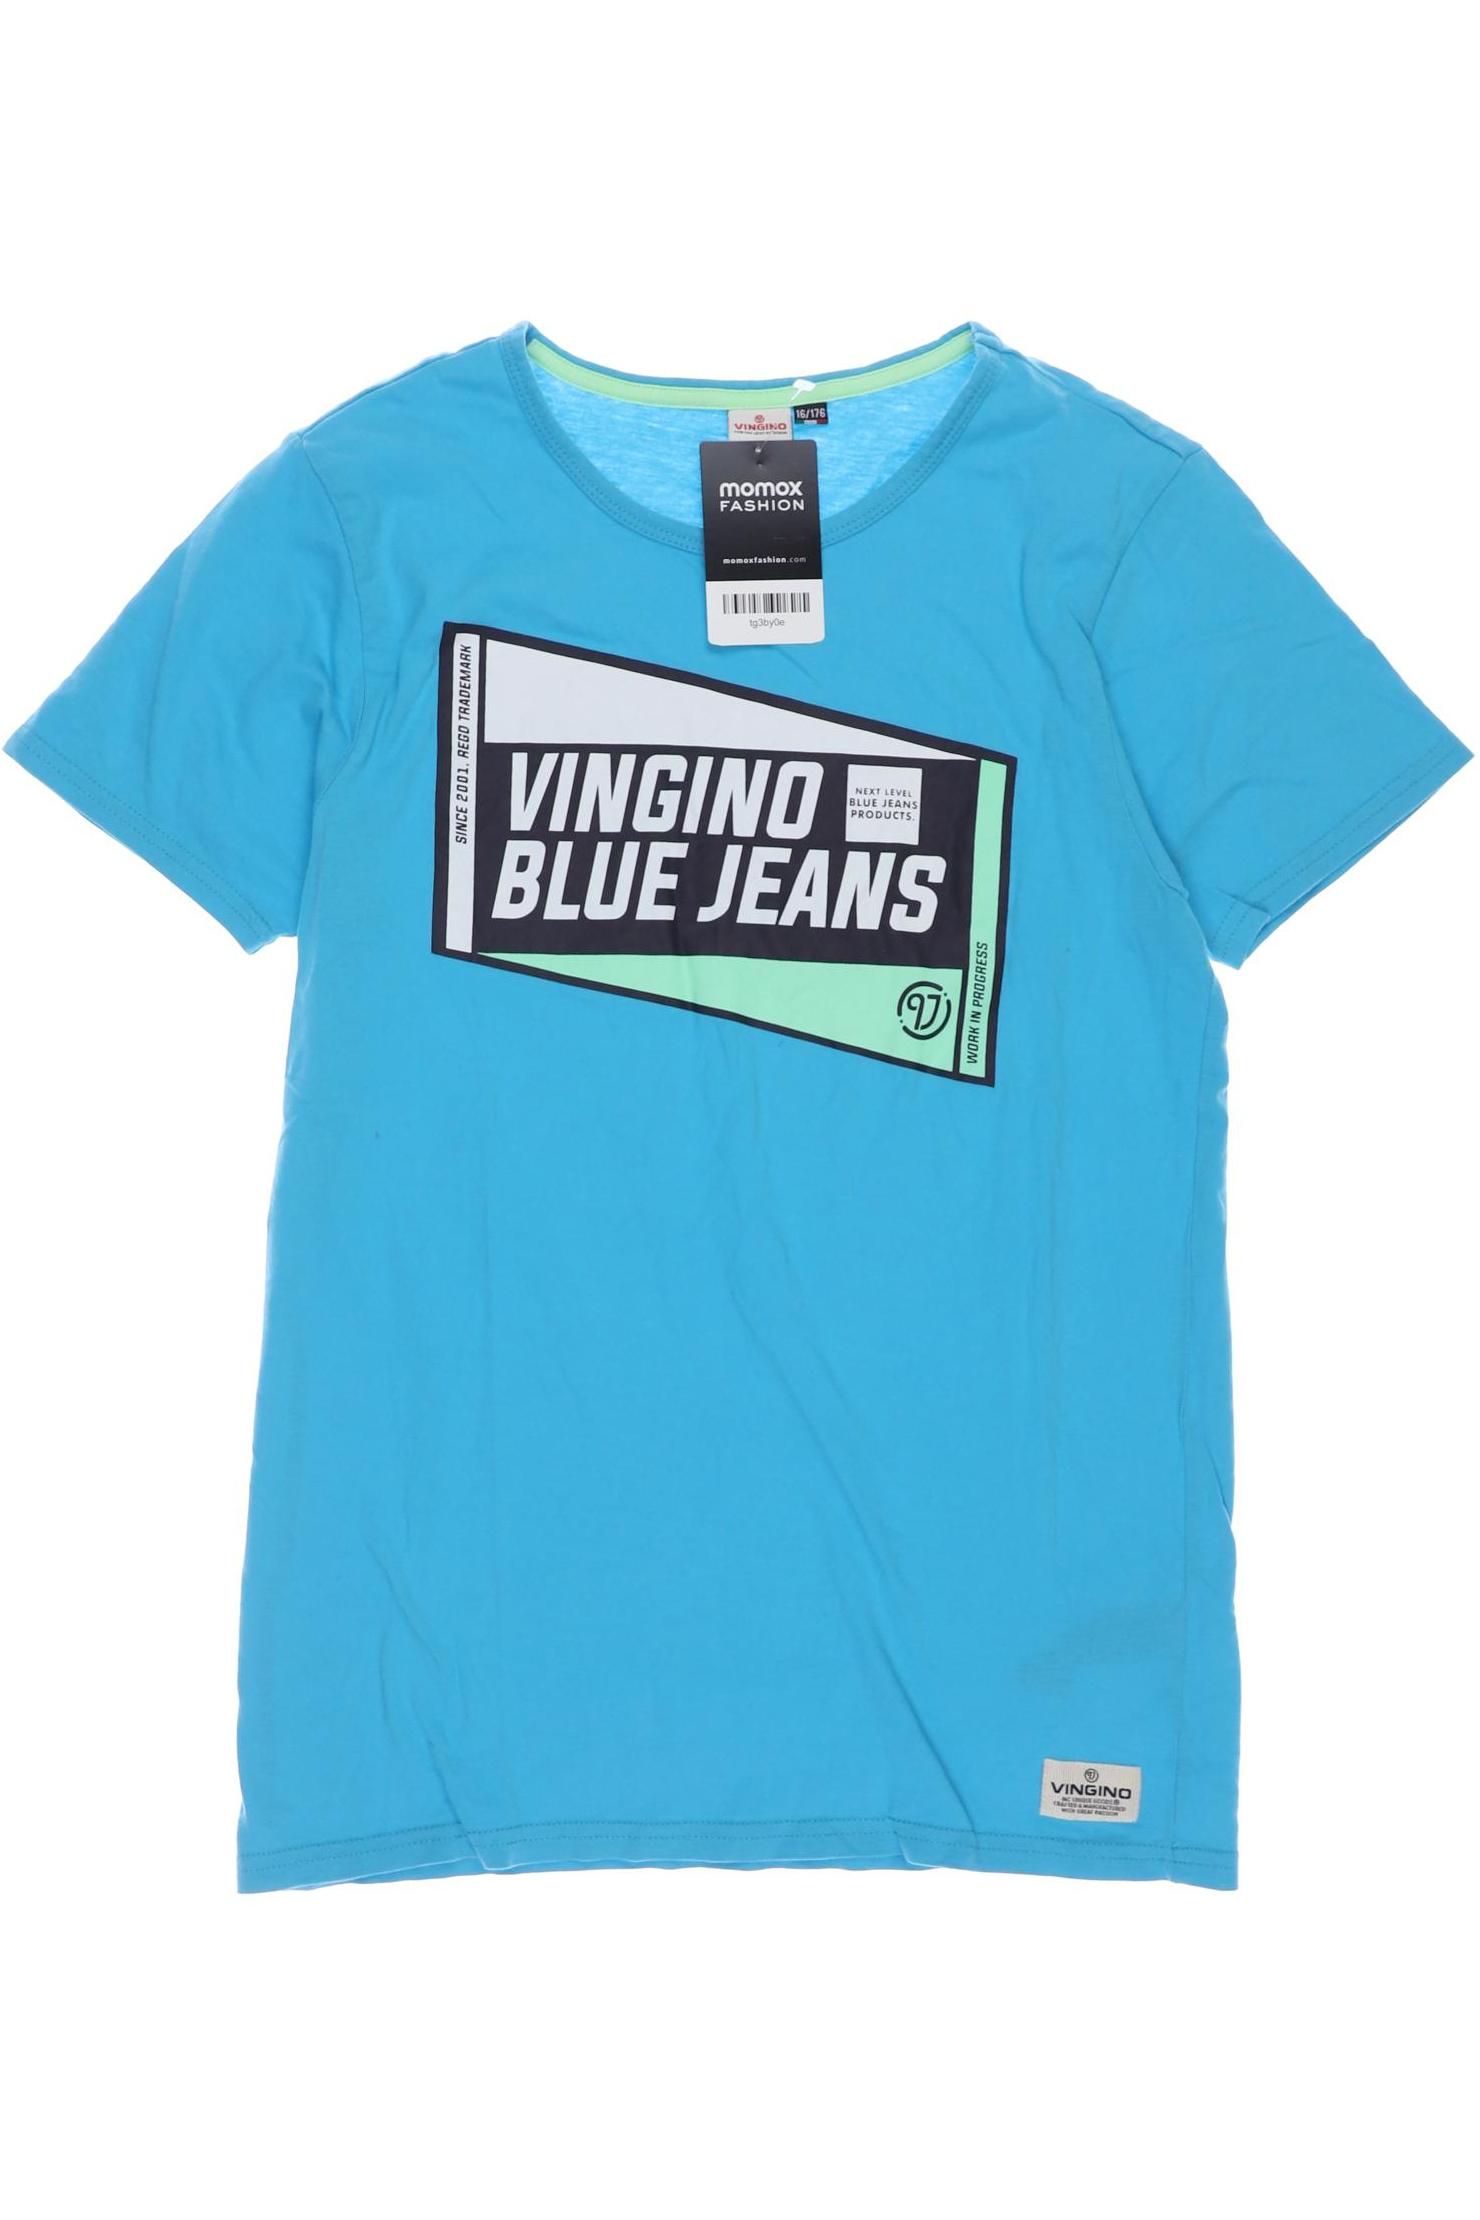 Vingino Herren T-Shirt, blau, Gr. 176 von VINGINO